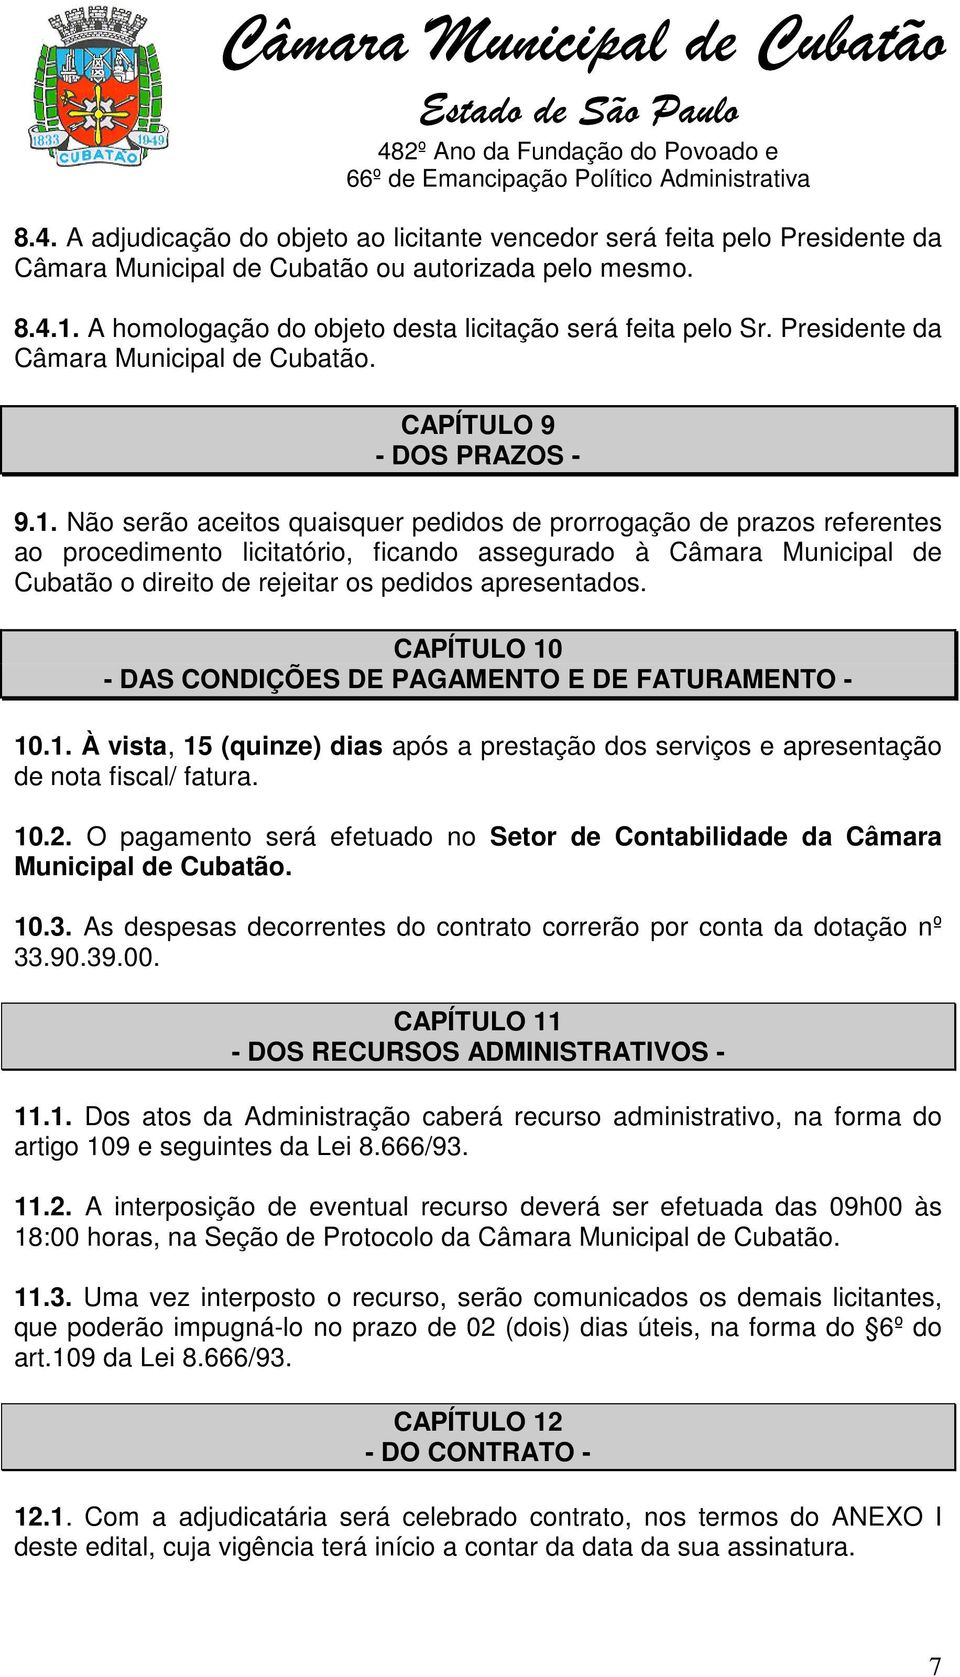 Não serão aceitos quaisquer pedidos de prorrogação de prazos referentes ao procedimento licitatório, ficando assegurado à Câmara Municipal de Cubatão o direito de rejeitar os pedidos apresentados.